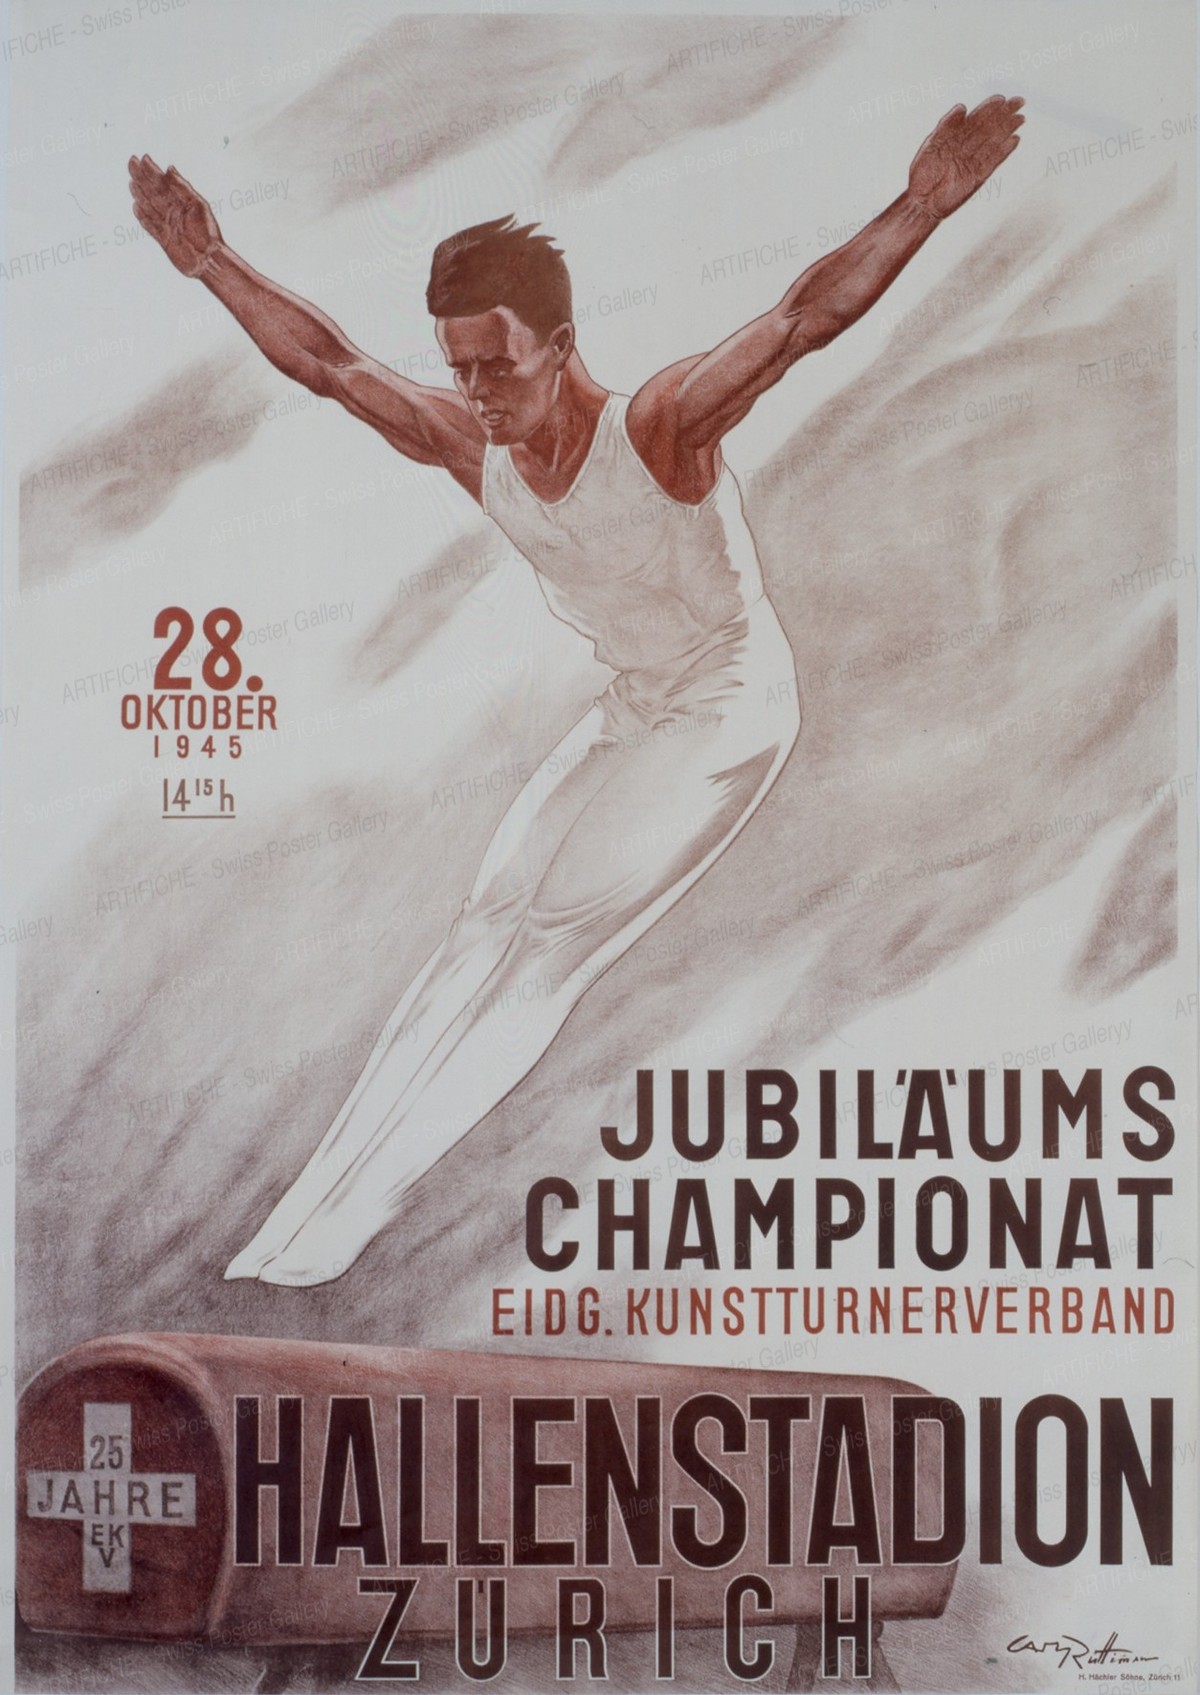 Gymnastics championship Zurich Hallenstadion 1945, Carl Rüttimann